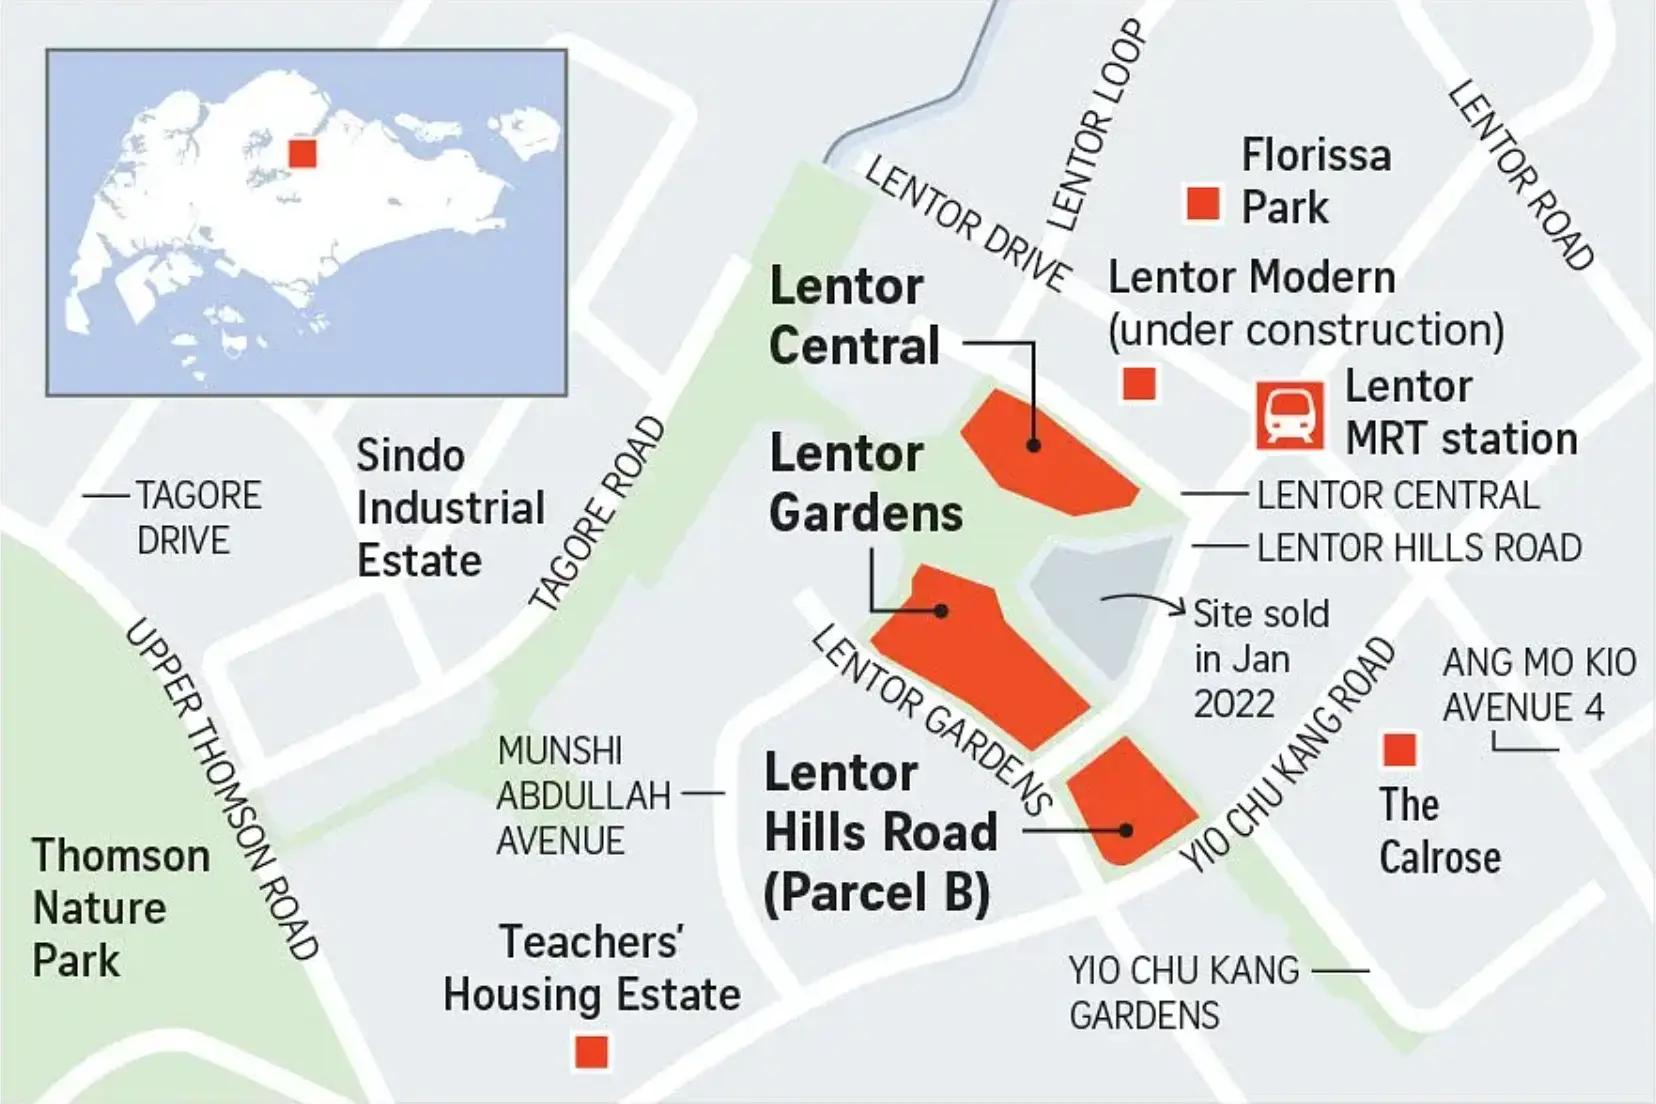 Hillock Green at Lentor Central, New Condo